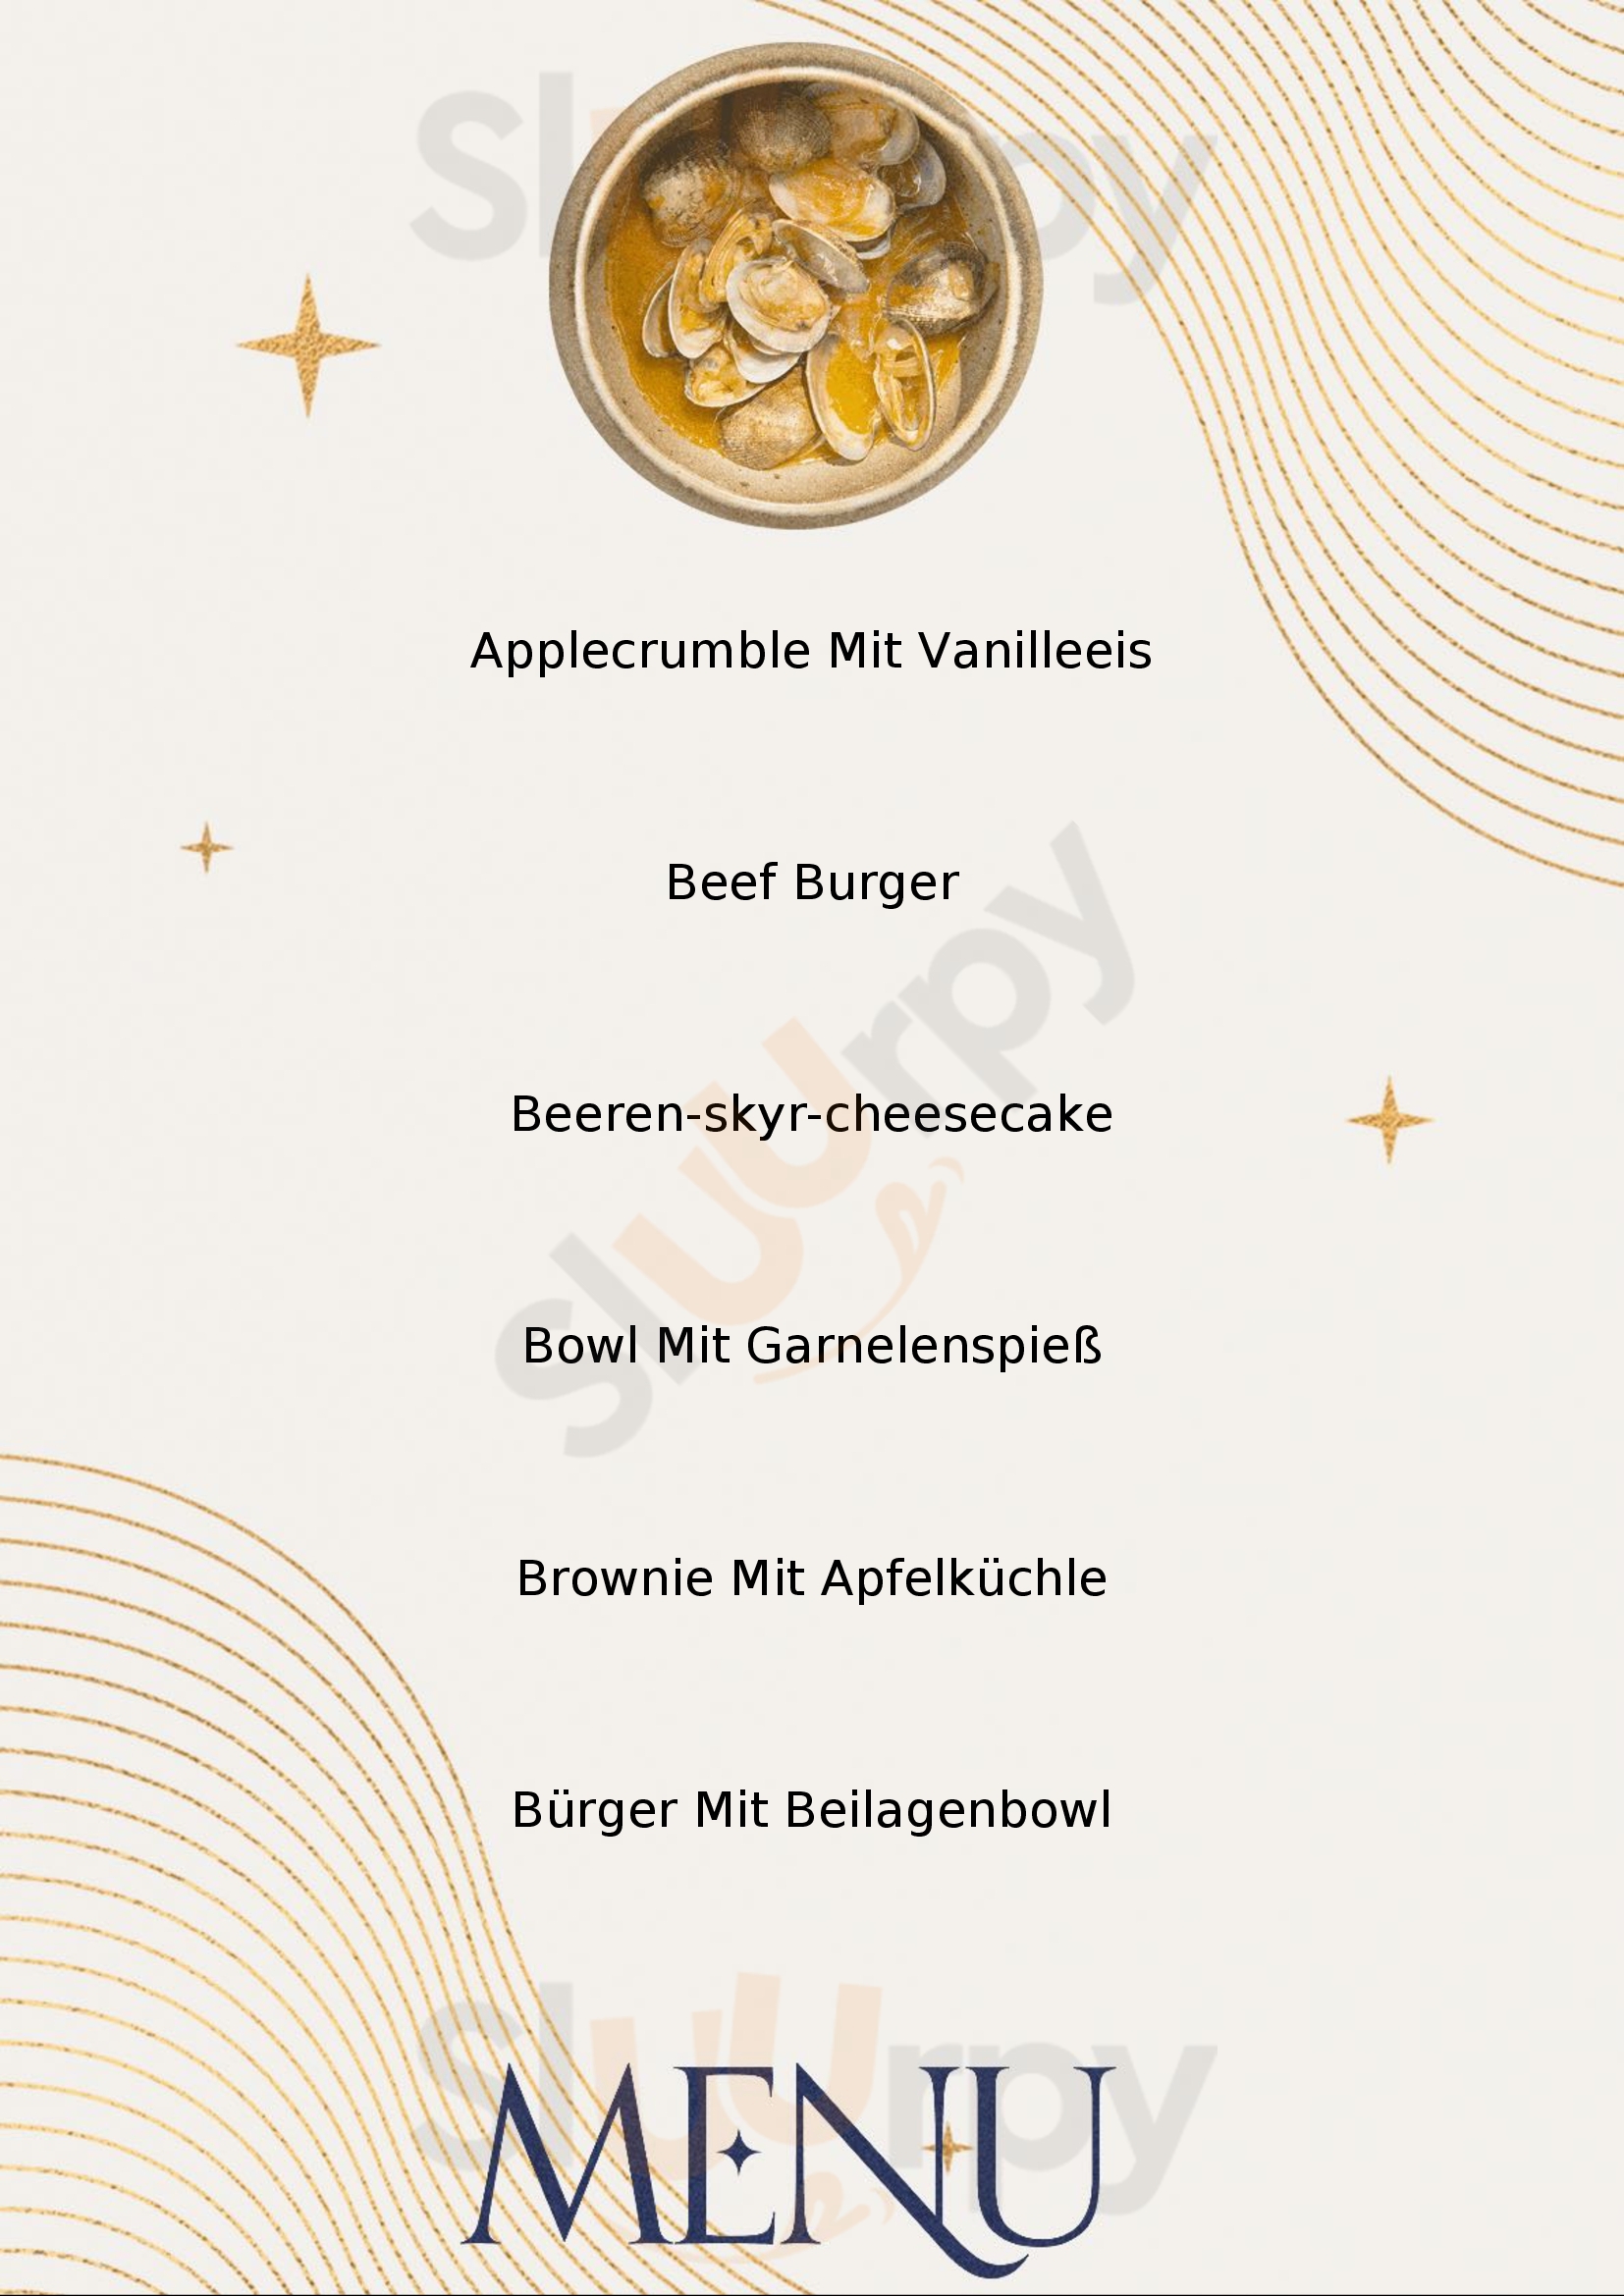 Taschi's Burger & Bowl Herrenberg Menu - 1